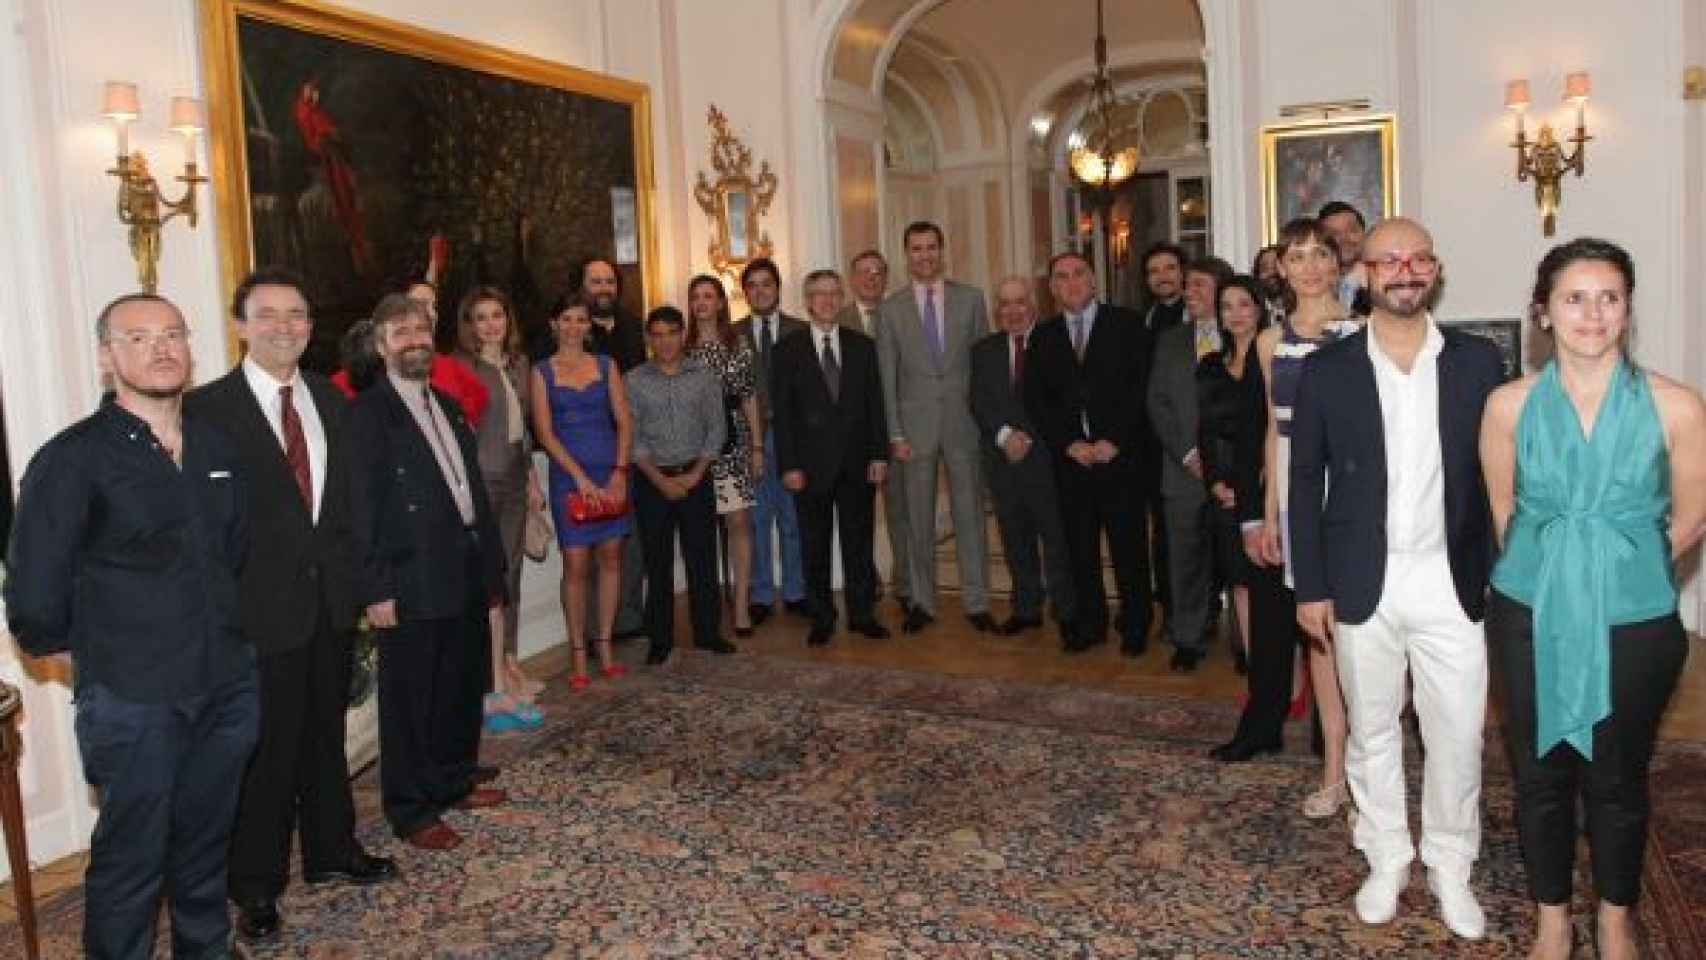 Uno de los salones de la residencia del embajador español ante la ONU, que en 2012 albergó una recepción al entonces Príncipe con motivo de un viaje a Nueva York / CASA REAL